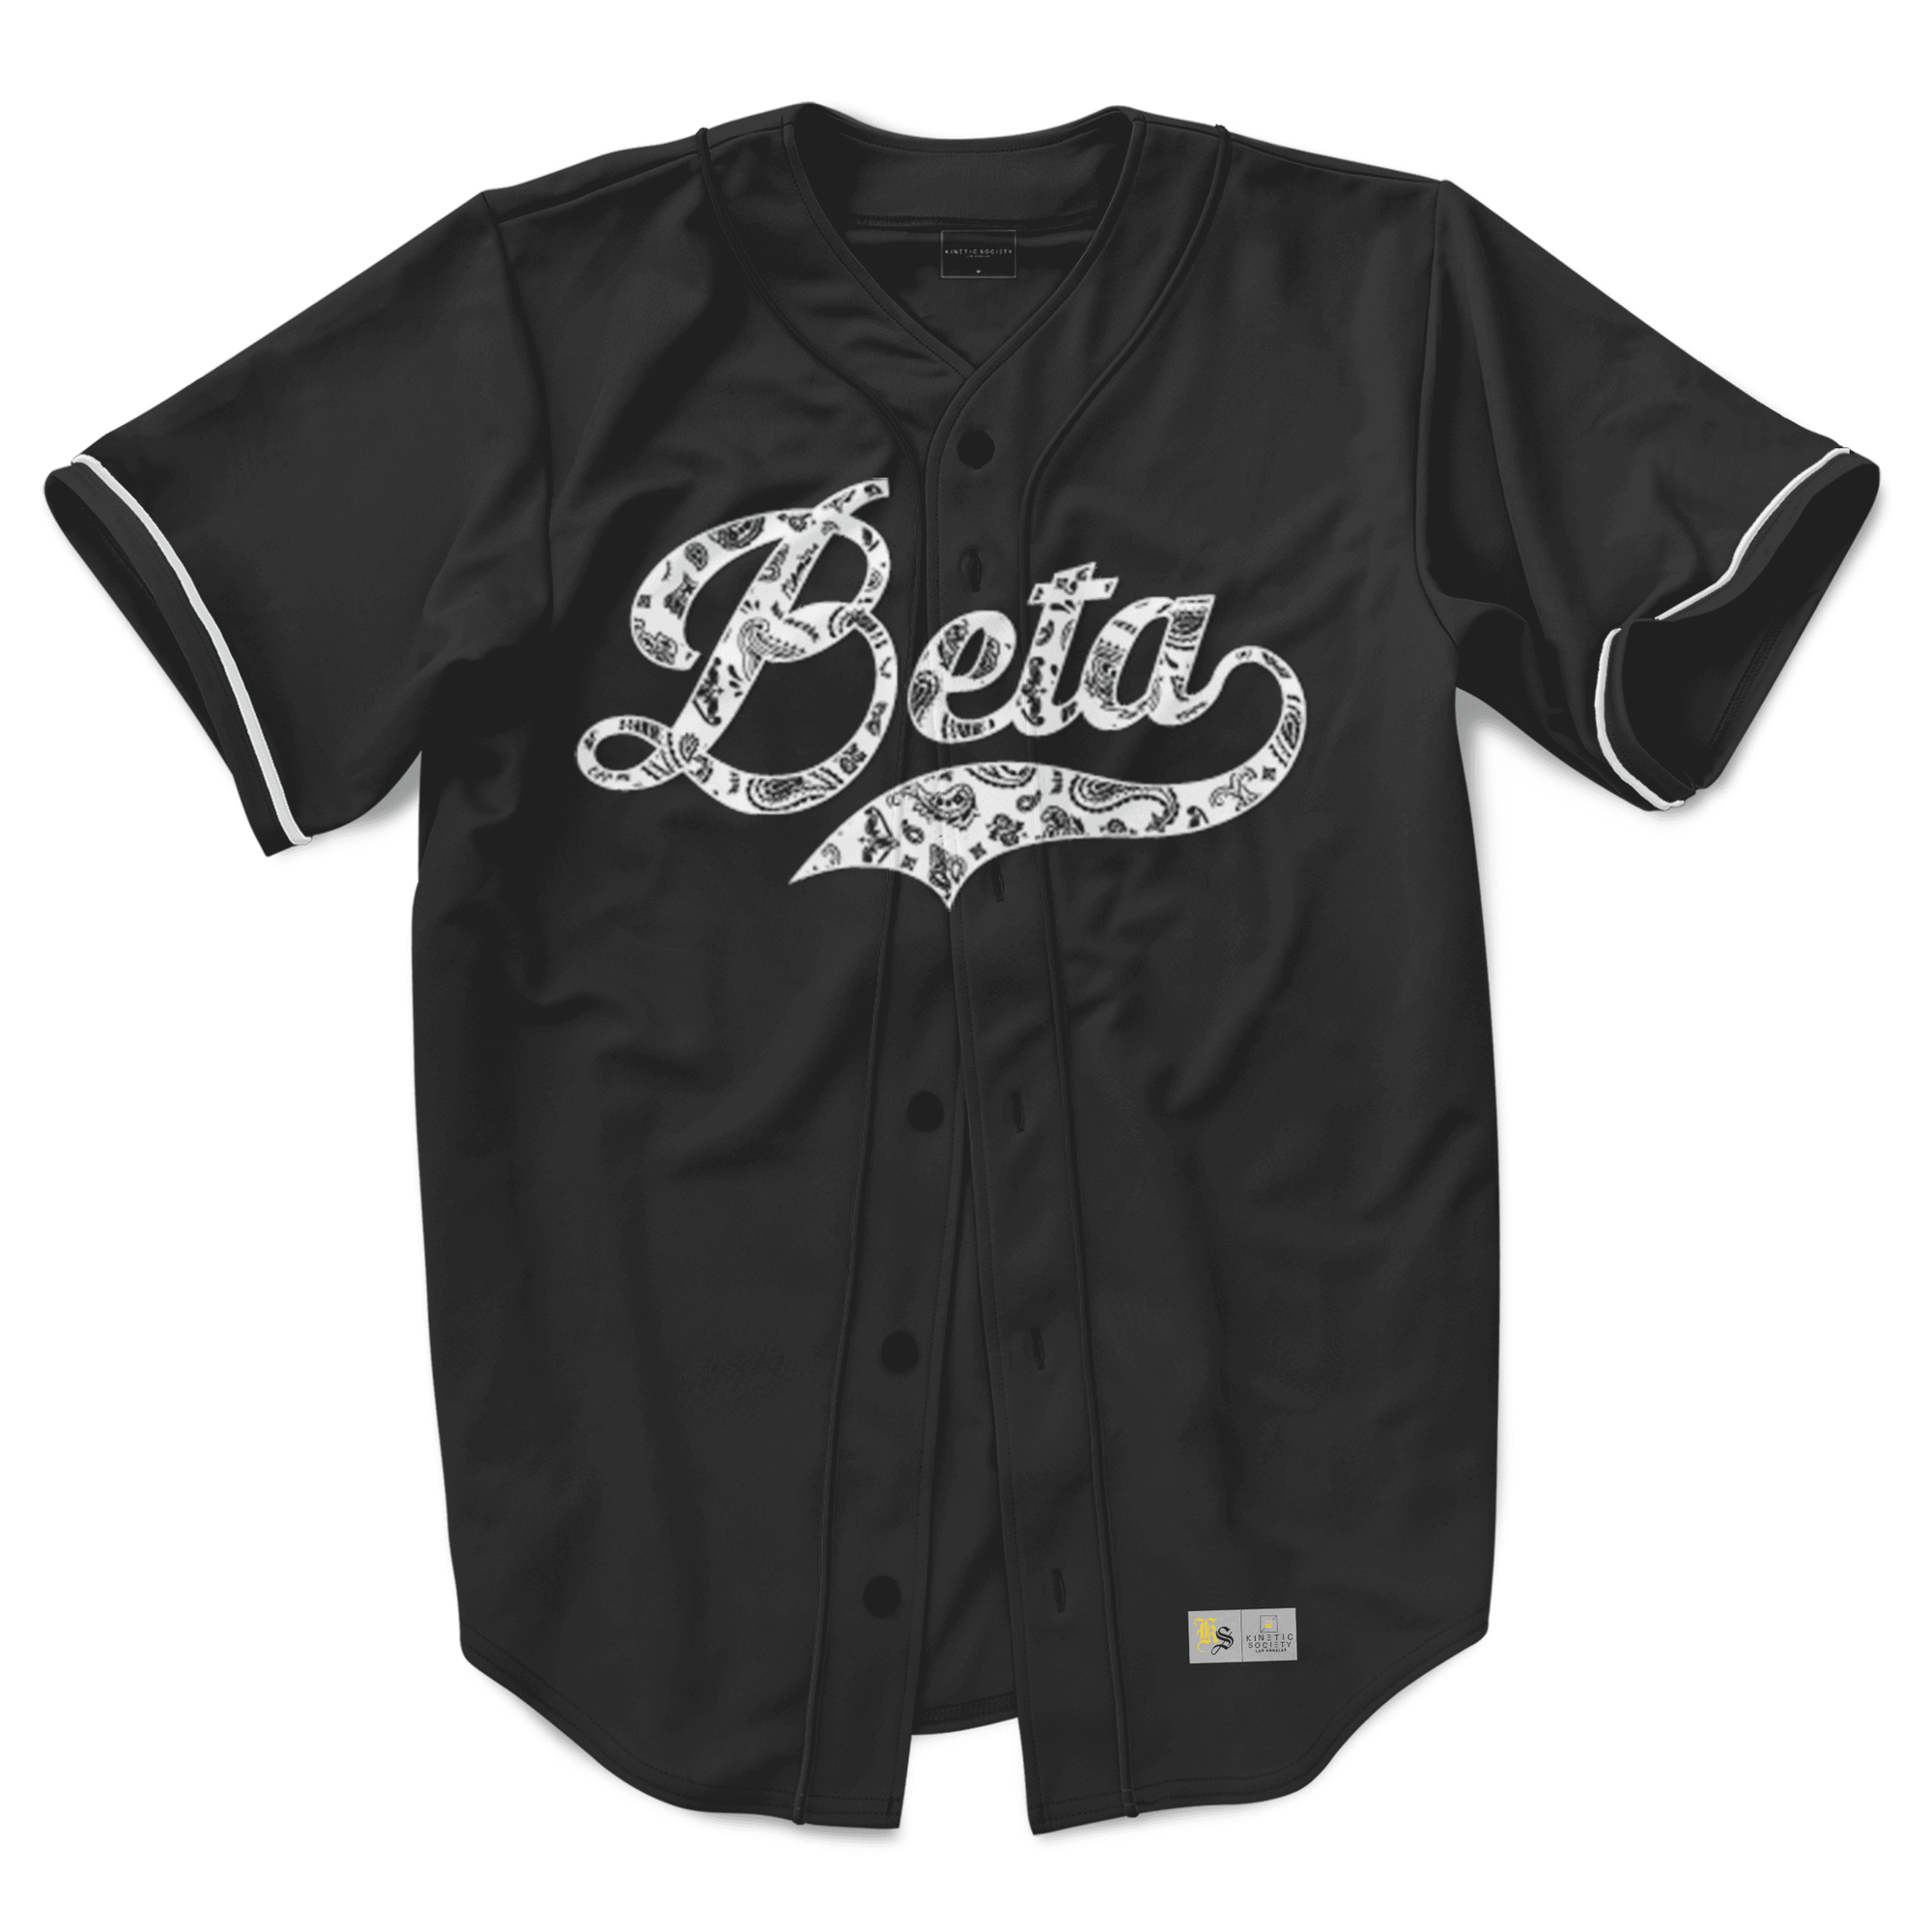 Beta Theta Pi - Paisley Baseball Jersey